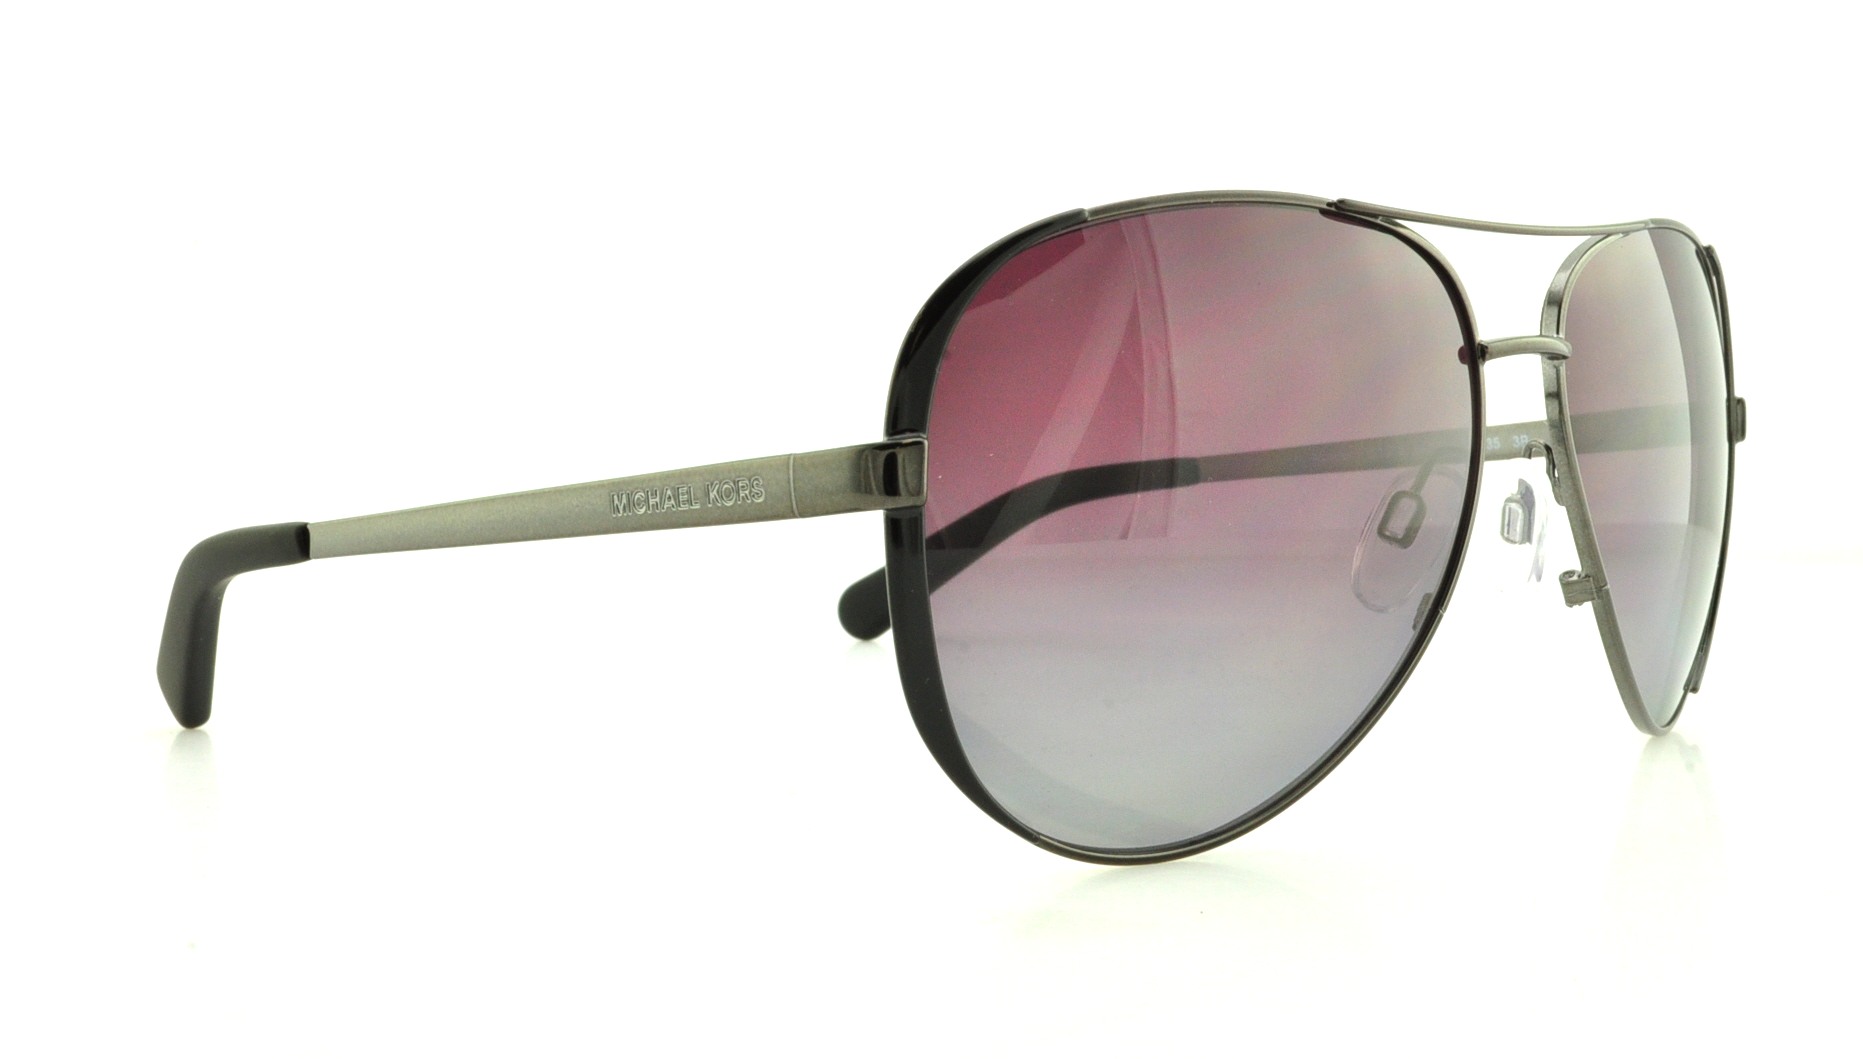 Designer Frames Outlet. Michael Kors Sunglasses MK5004 Chelsea